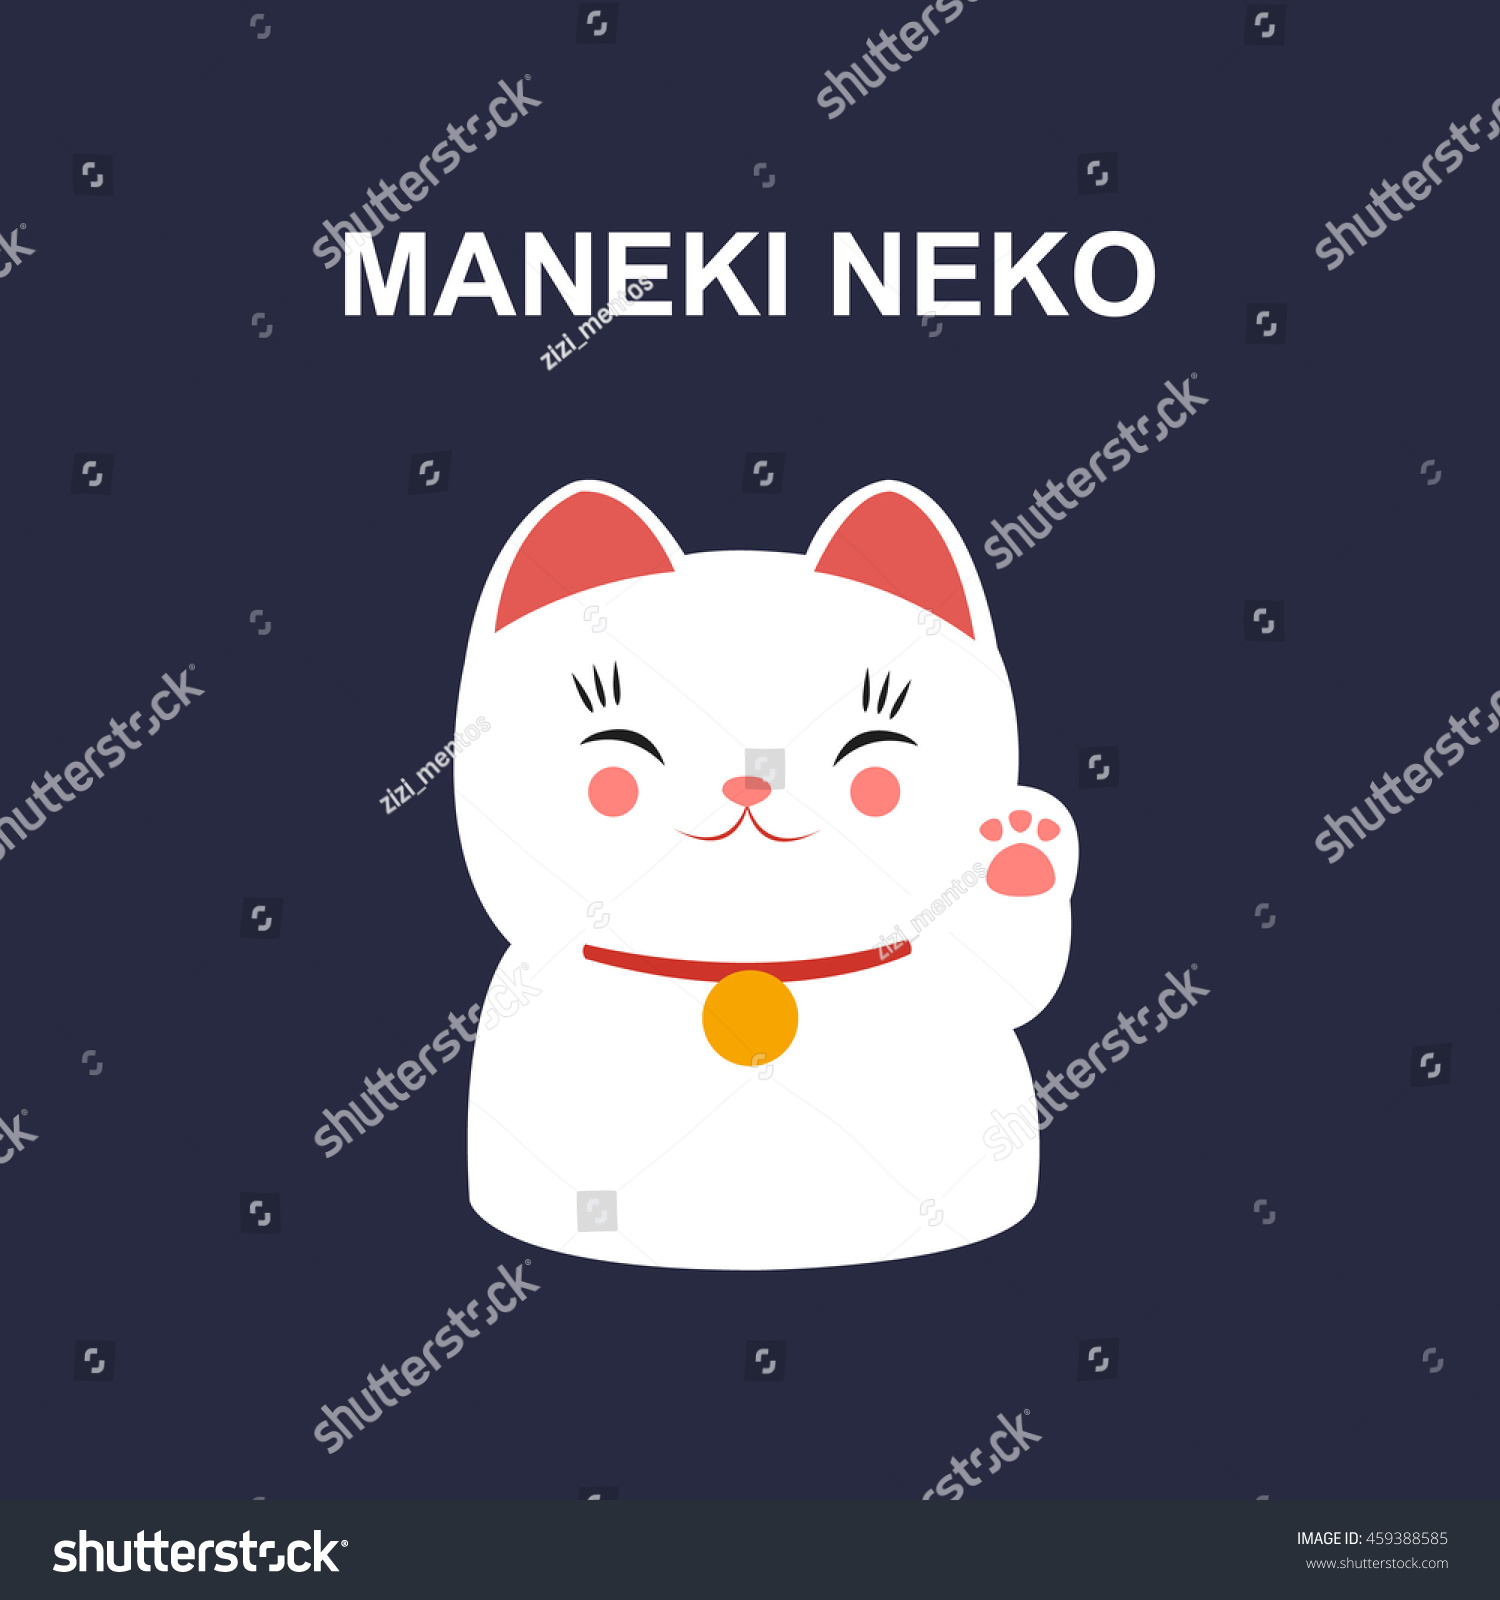 Maneki Neko Icon. Vector Illustration - 459388585 : Shutterstock